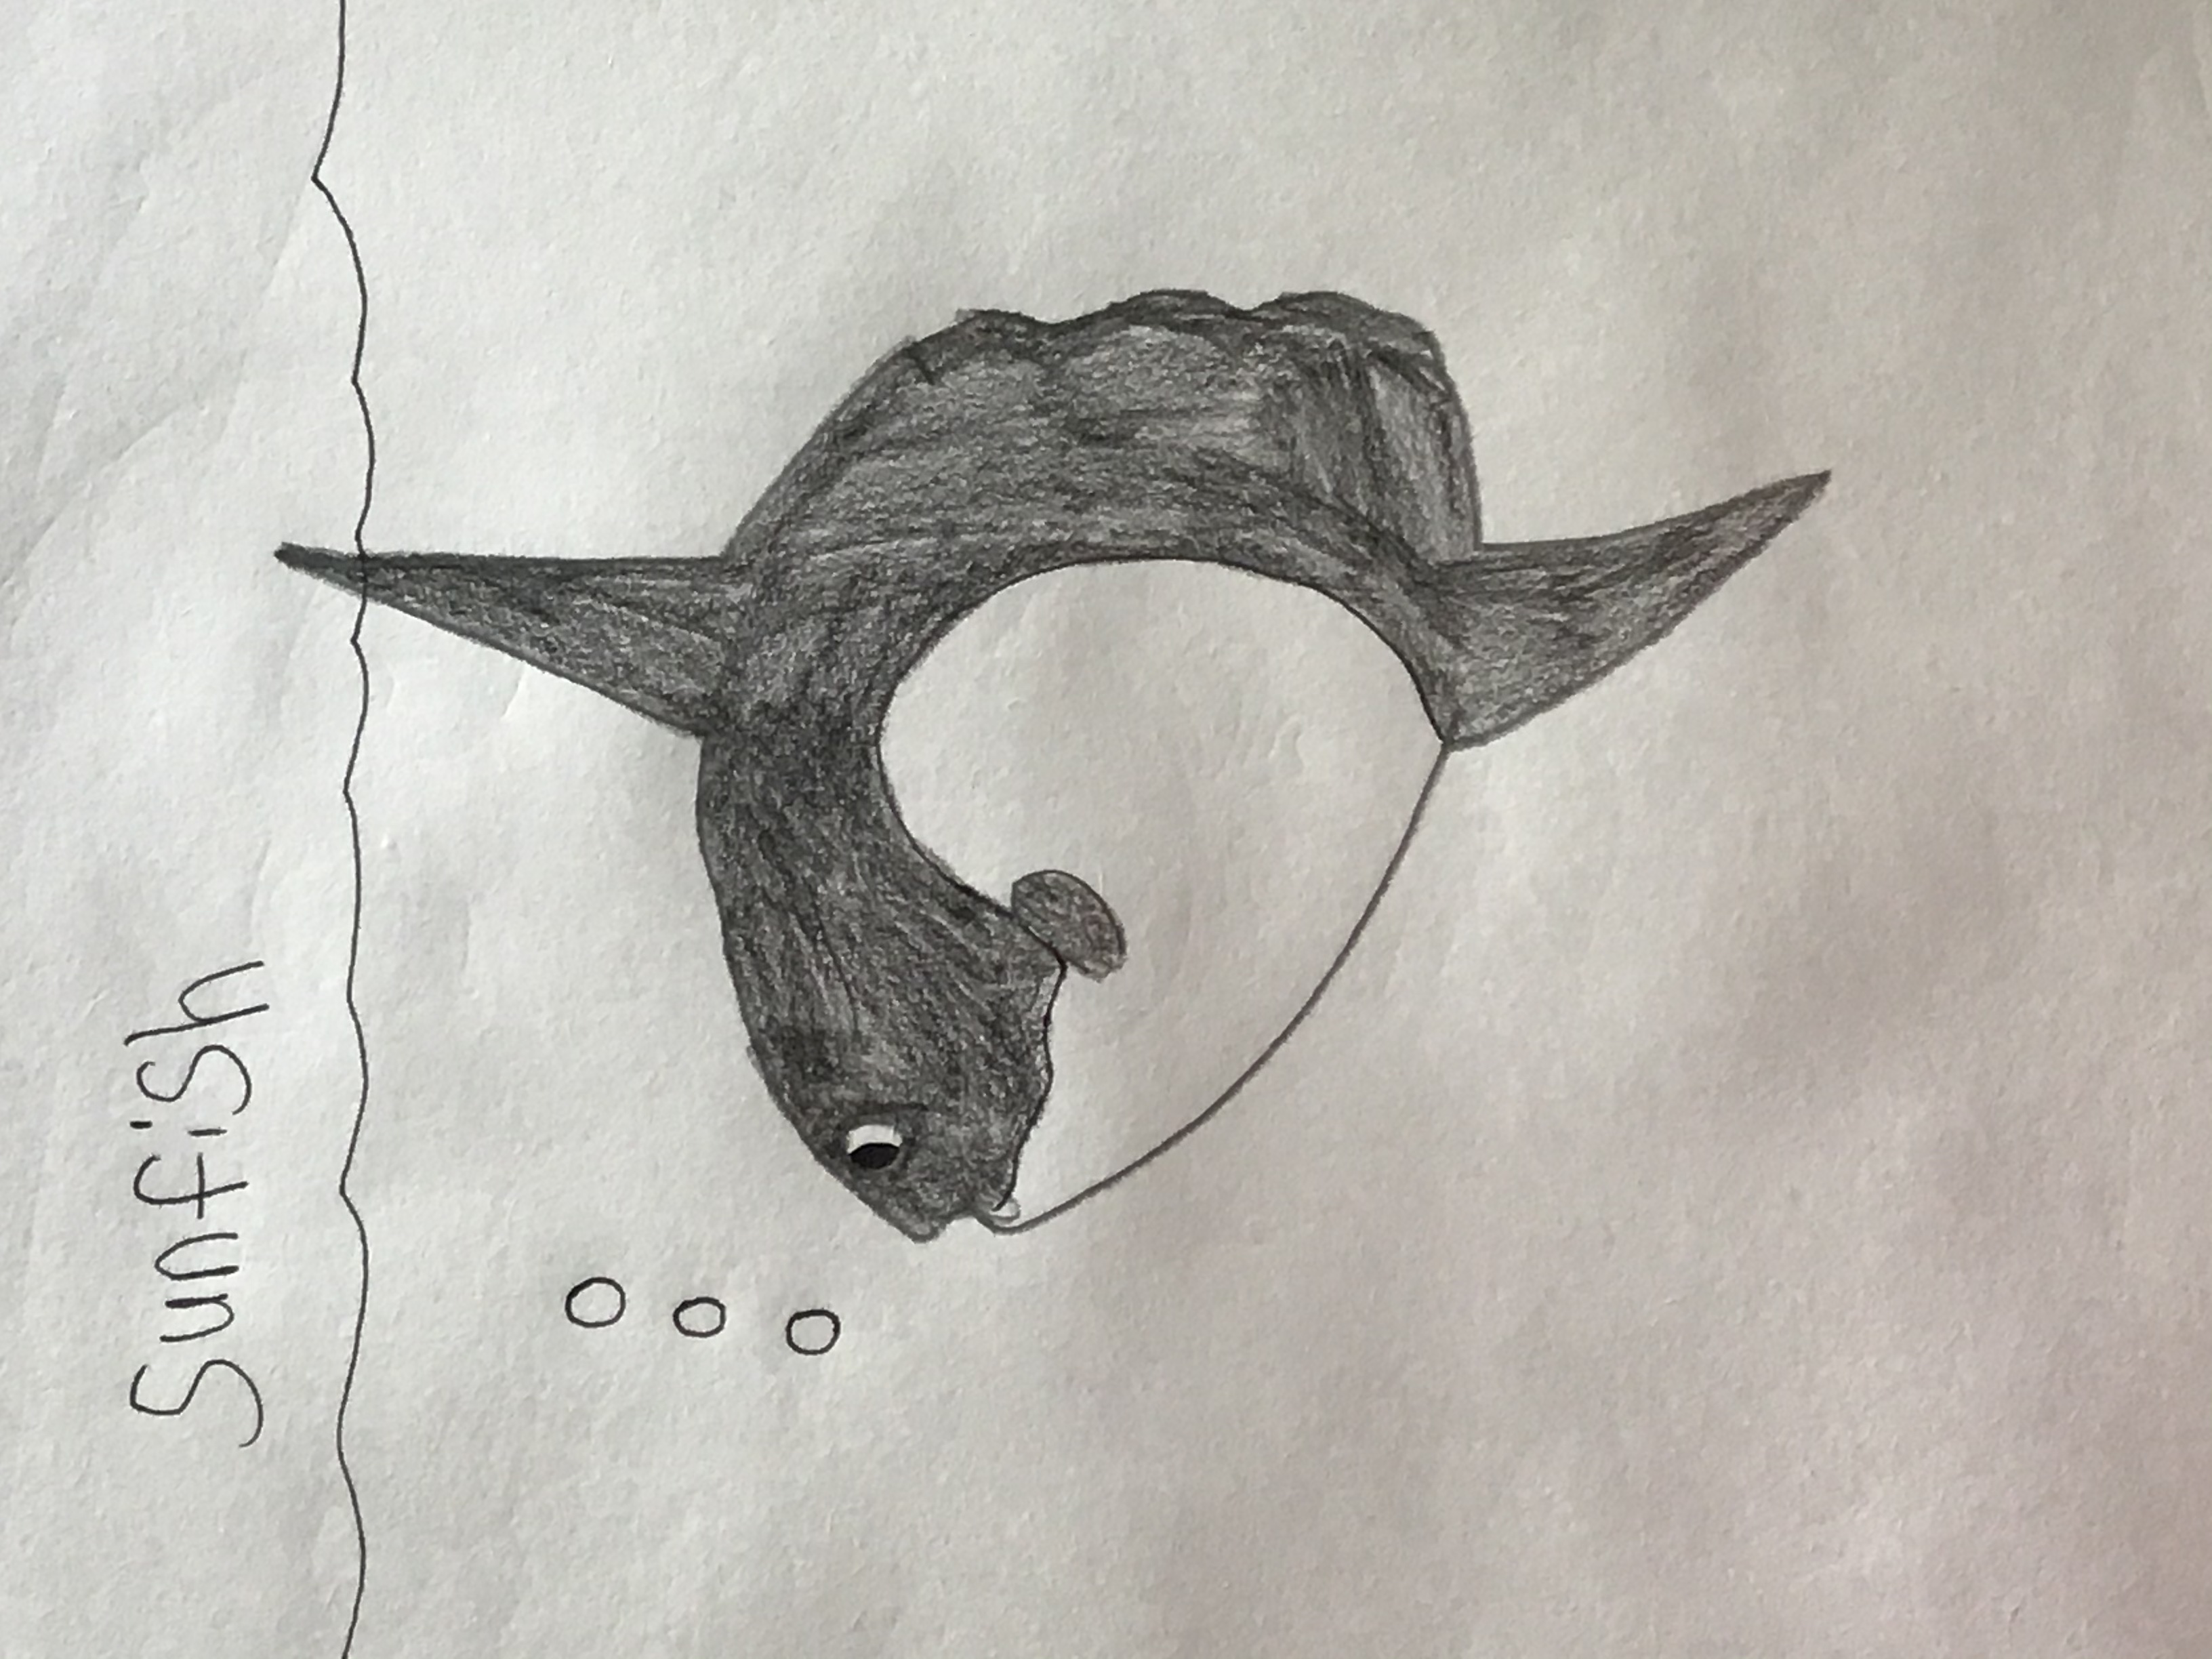 Sunfish drawing by Zelink-Gamer on DeviantArt